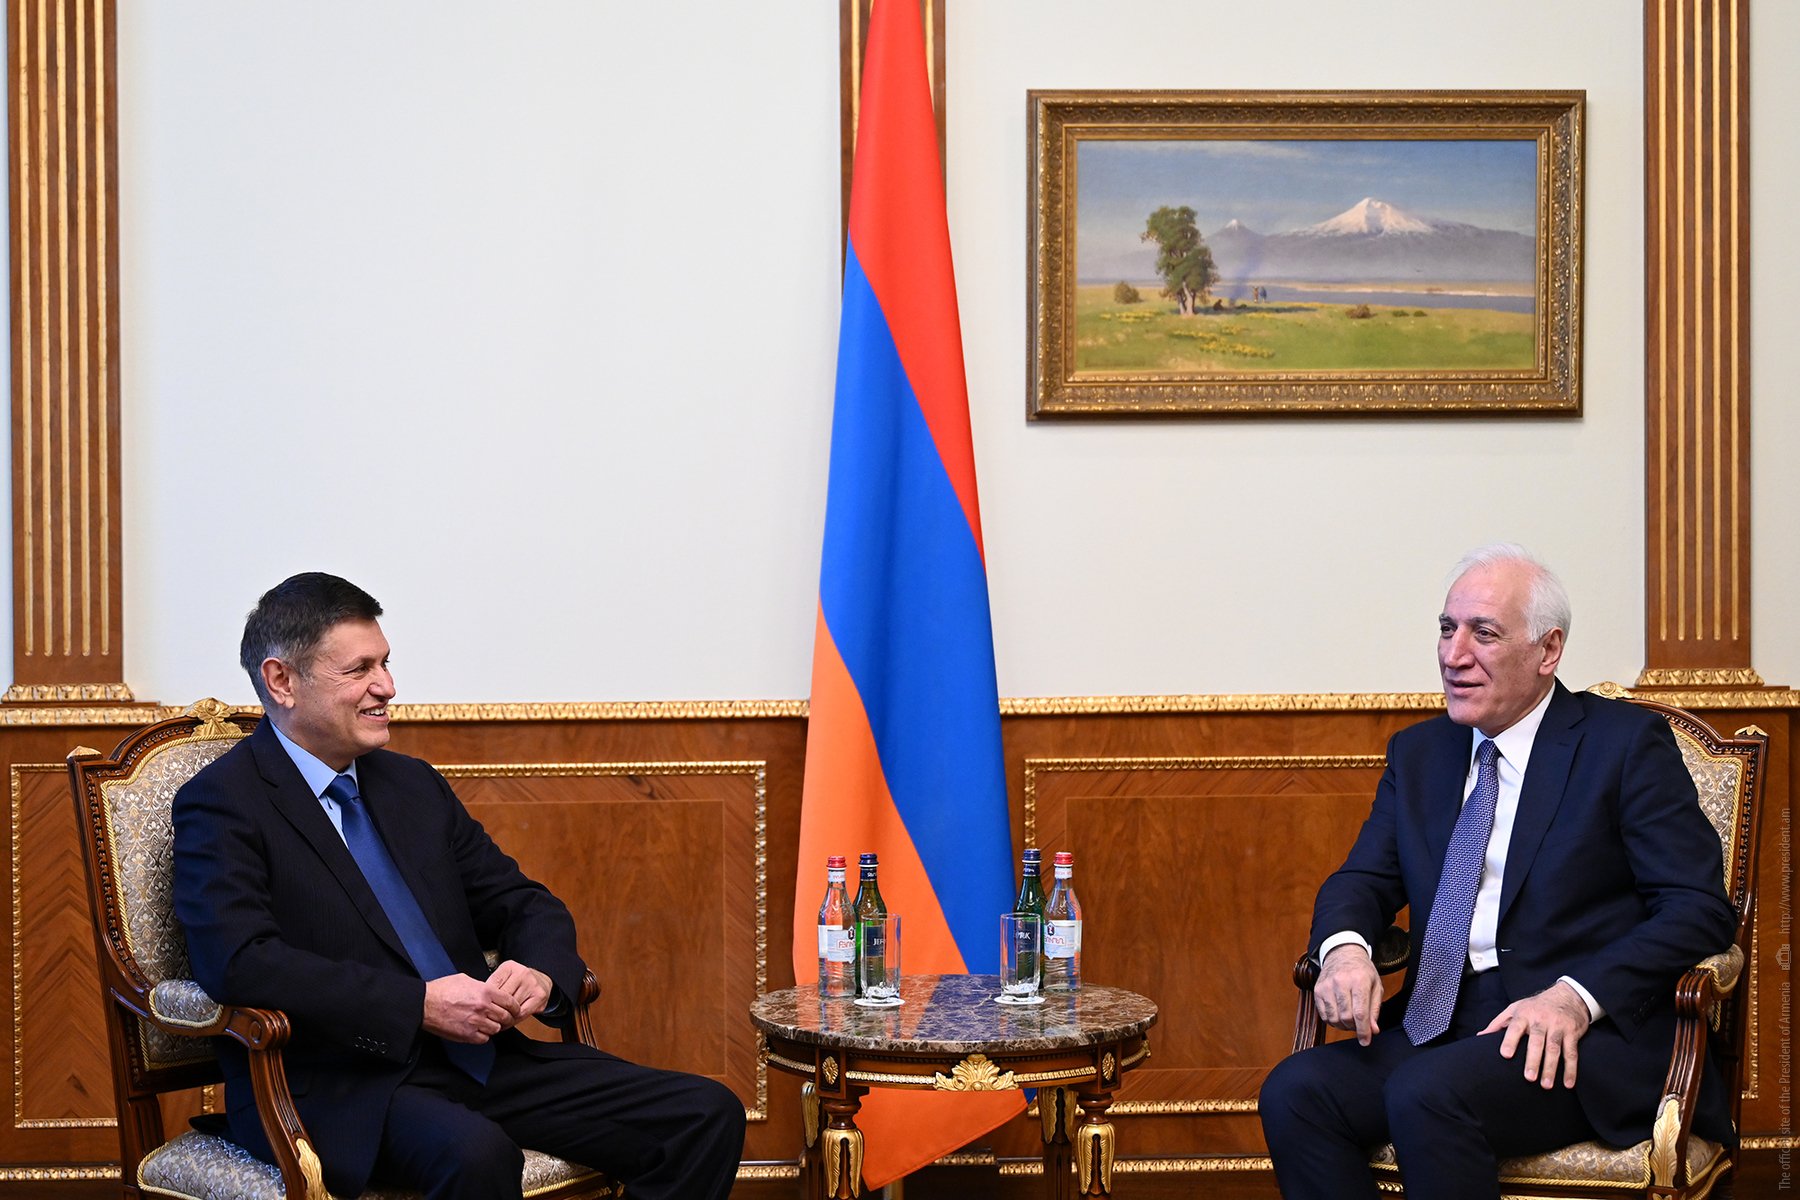 Հայաստանի նախագահը և Հունաստանի դեսպանը մտքեր են փոխանակել տարածաշրջանային զարգացումների շուրջ